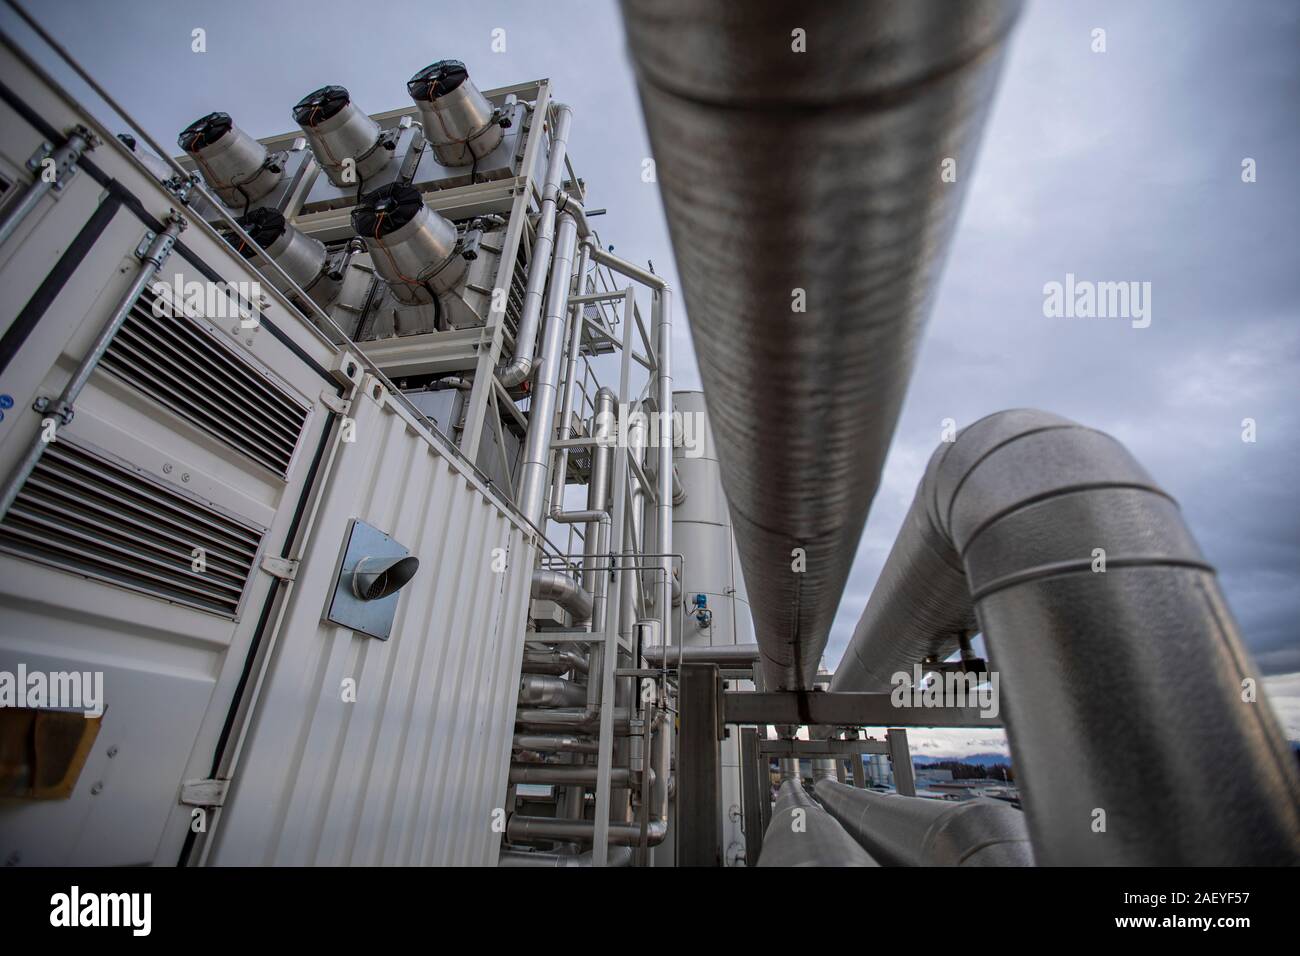 La empresa suiza Climeworks ejecutan 30 CAD - Captura de aire directo - ventiladores en el techo de esta basura incinerador en Hinwil fuera de Zurich. Fundada en 2009 por Christoph Gebald y Jan Wurzbacher, la compañía ha comercializado la unidad de captura de carbono modular, cada una de las cuales es capaz de chupar hasta 135 kg. de CO2 fuera del aire a diario. El proceso es energía exigente, y las unidades de Hilwil utilizar el exceso de energía desde el incinerador para ejecutar los coleccionistas. A su vez, el CO2 se usa cerca a un invernadero comercial para aumentar el rendimiento del cultivo y también entregado a un agua mineral ma Foto de stock